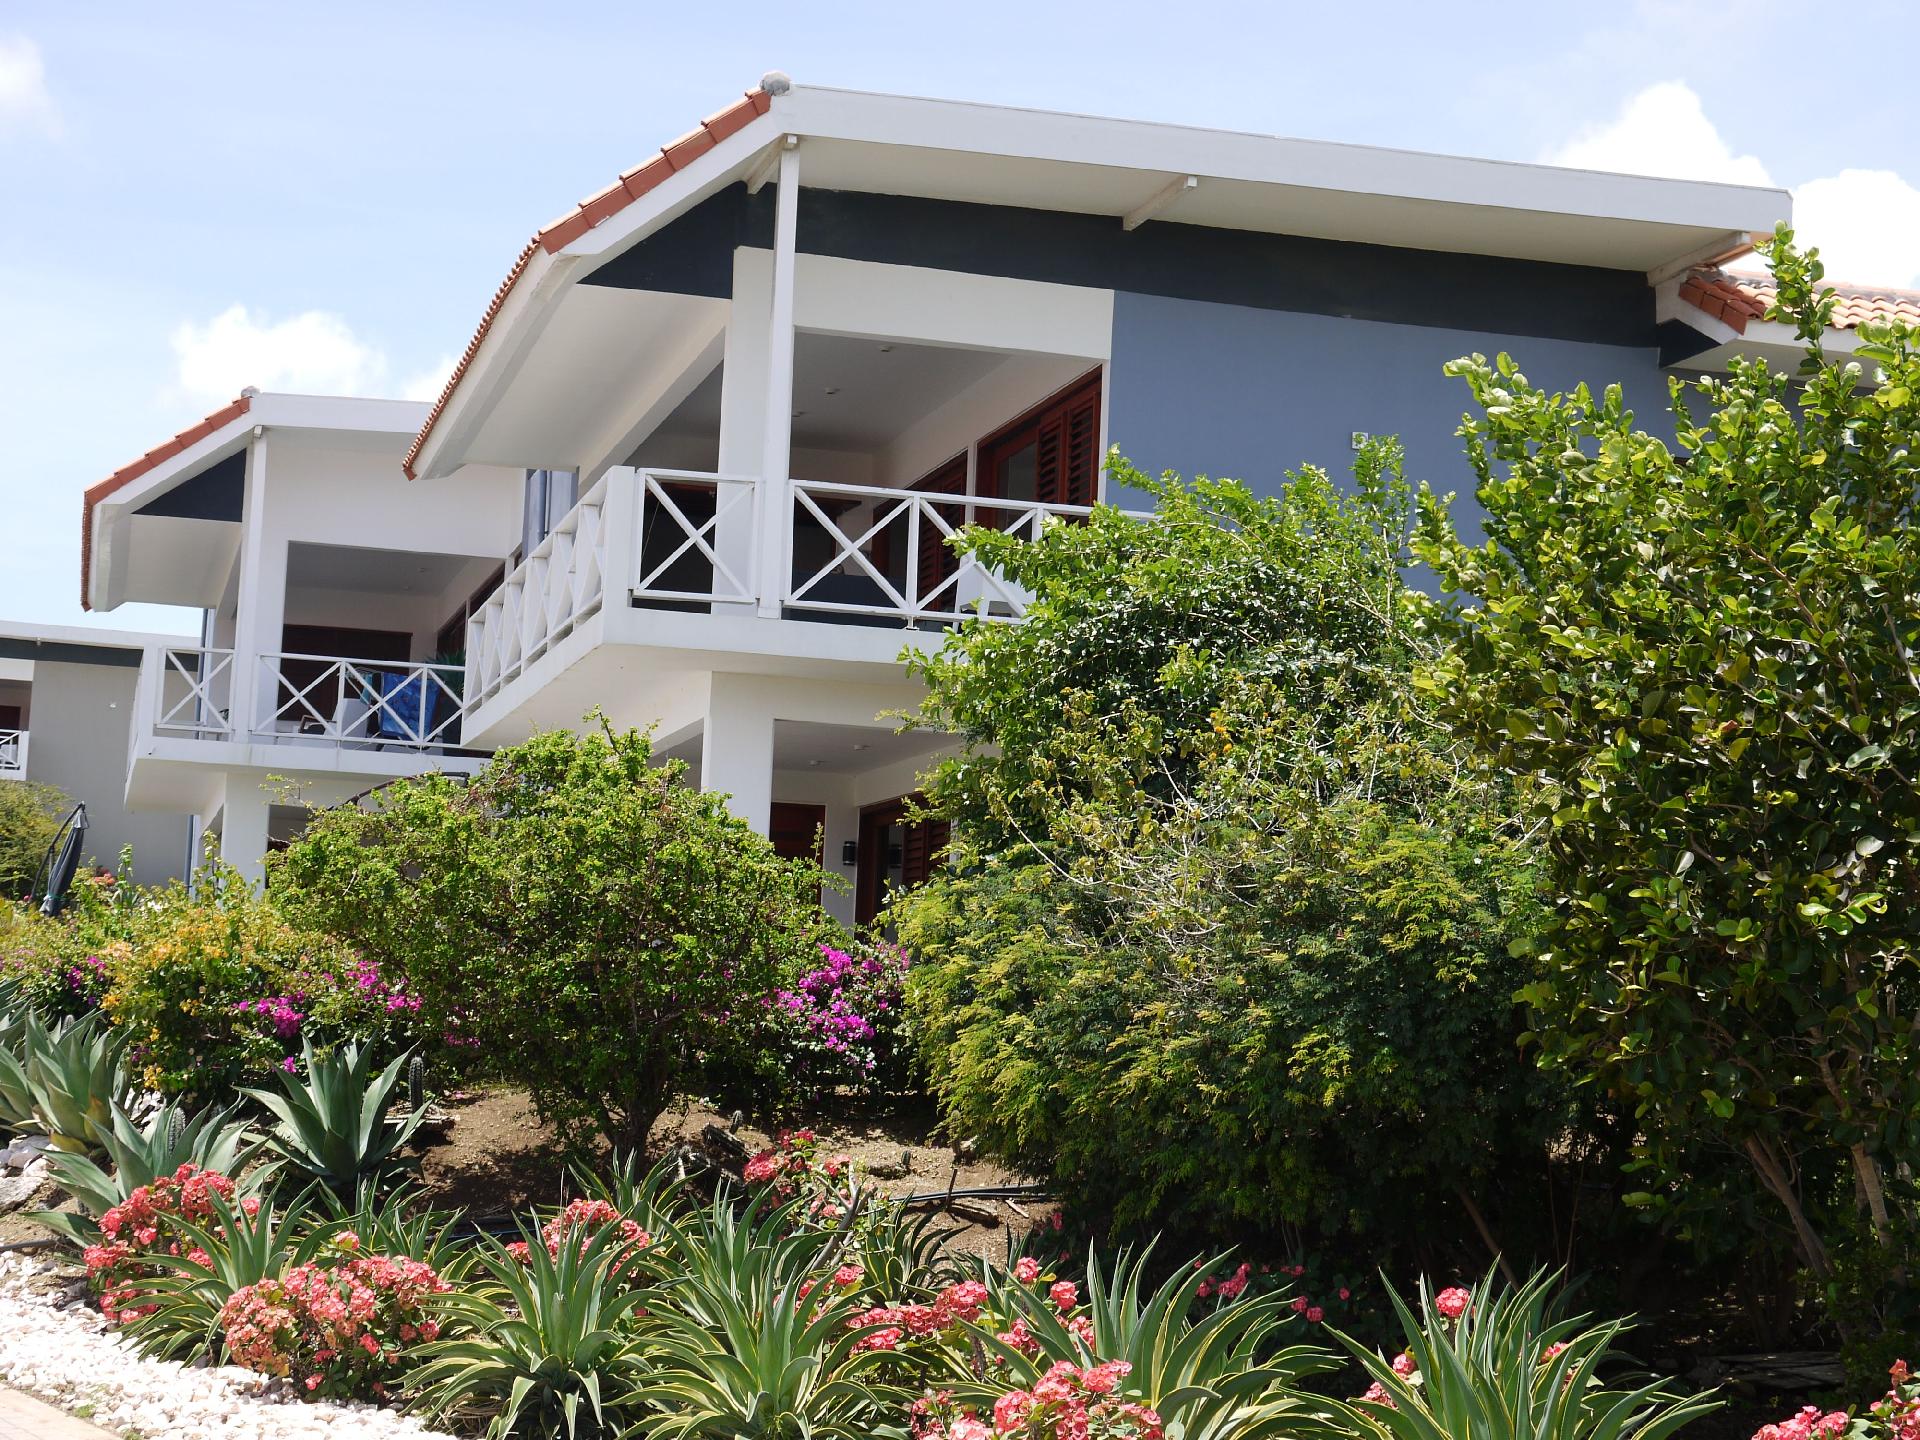 Ferienwohnung für 6 Personen ca. 140 m²  Ferienwohnung in Mittelamerika und Karibik